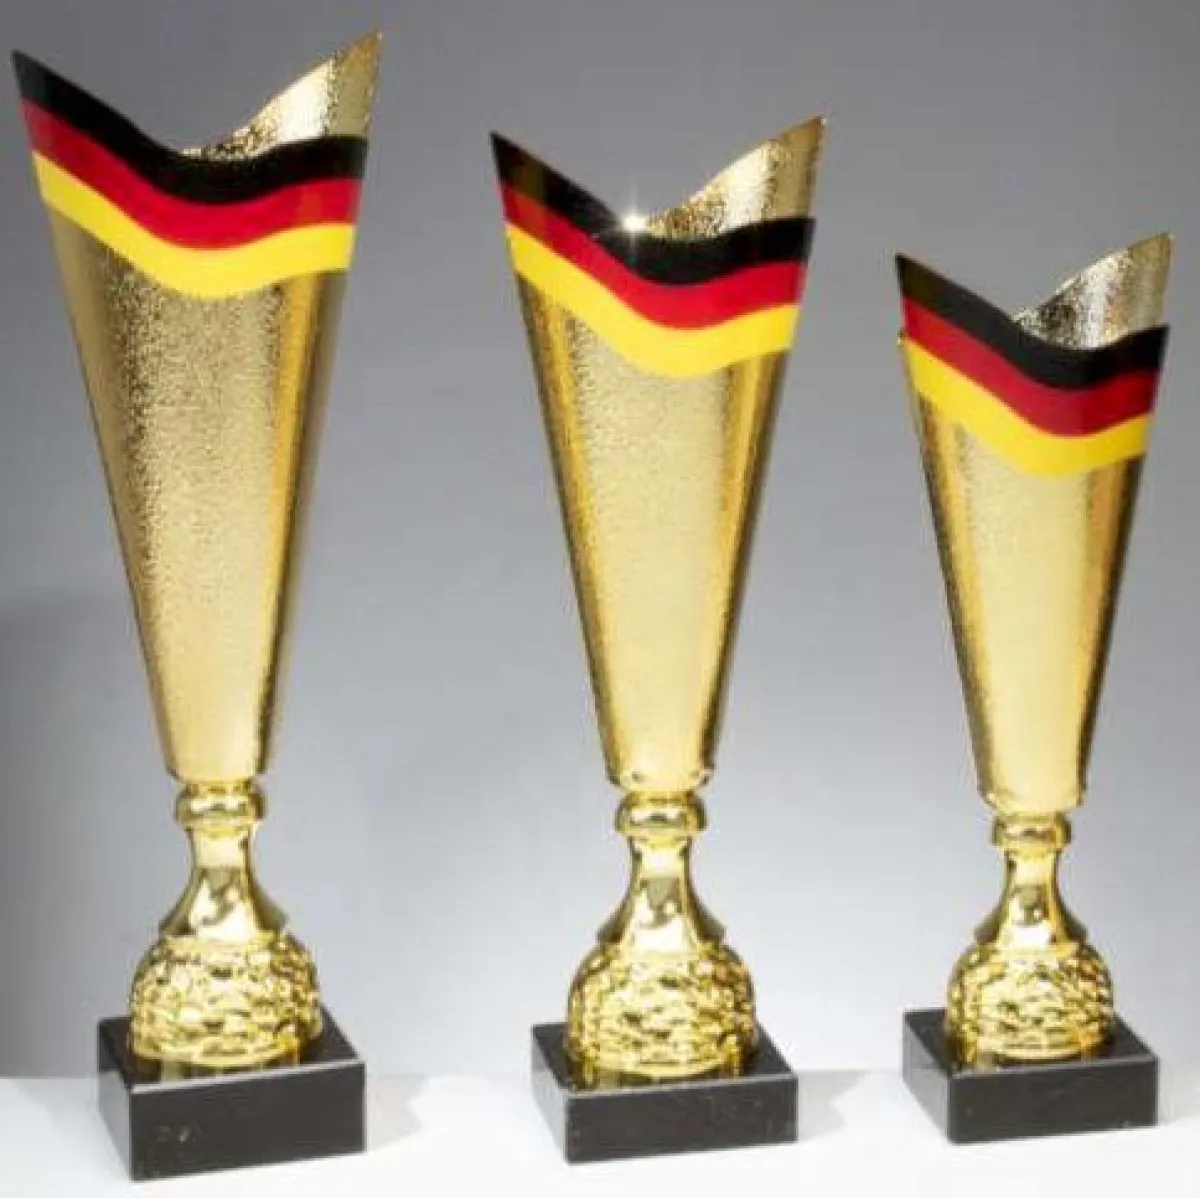 Duitsland Cup | Beker Nationaal Duitsland Vlag goud